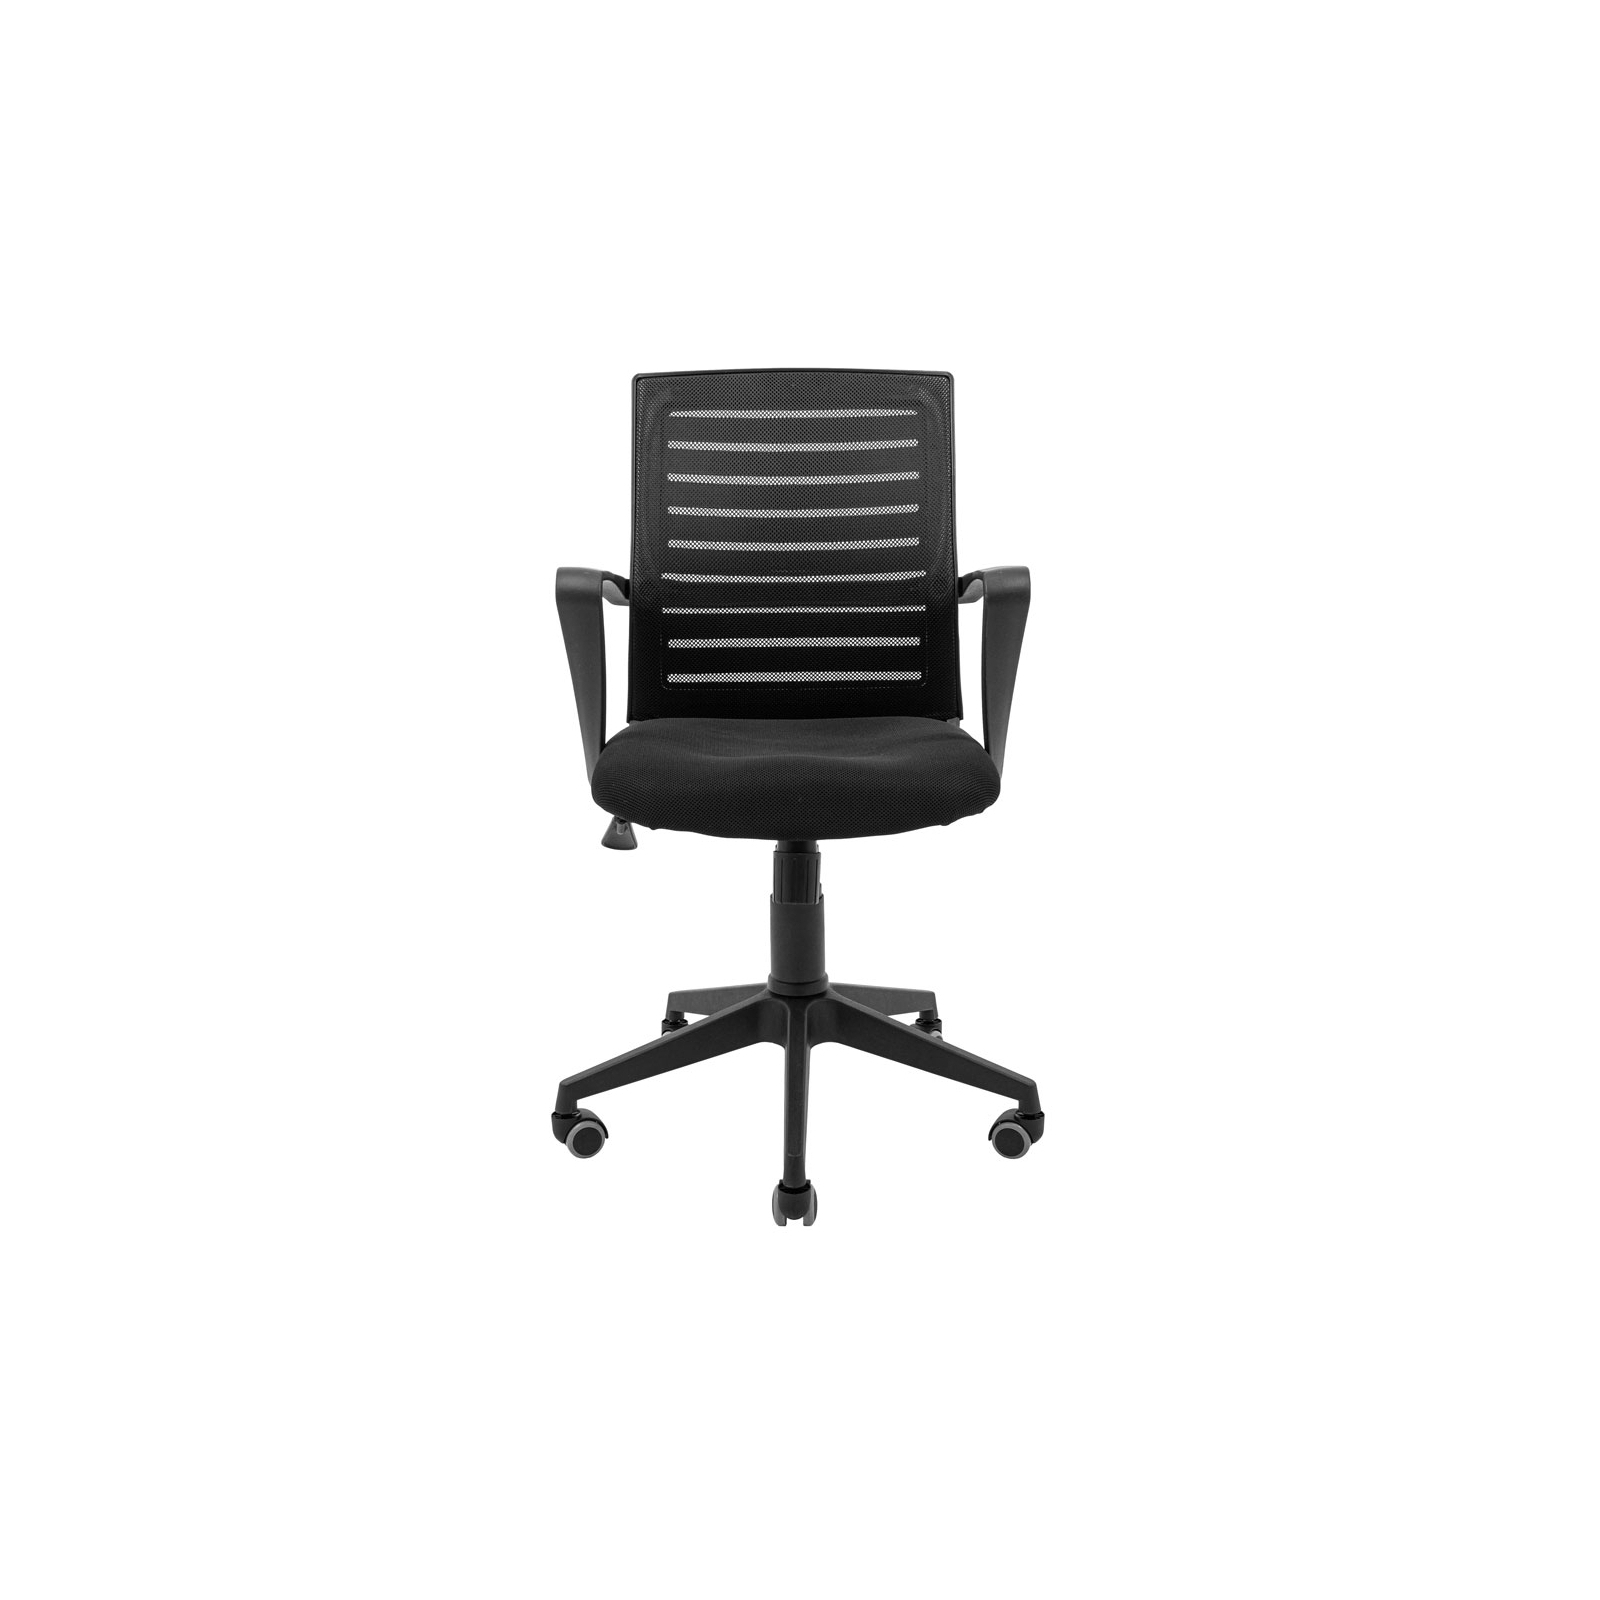 Офисное кресло Richman Флеш Ю Пластик М-1 (Tilt) Сетка черная+красная (ADD0003098) изображение 2